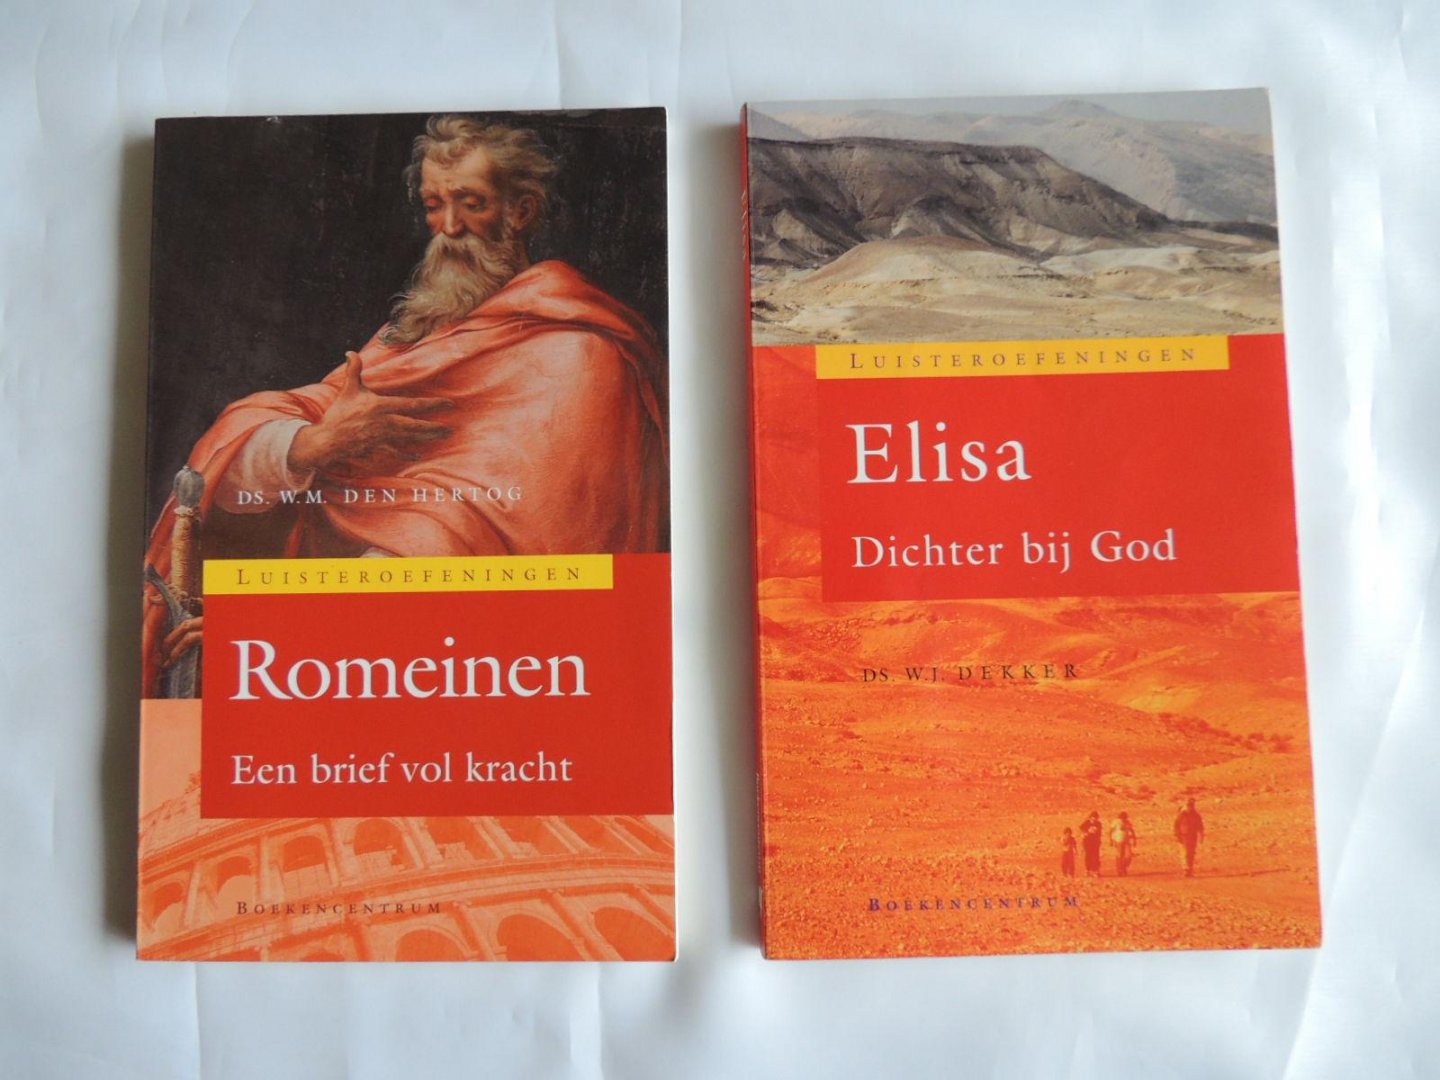 Hertog, W.M. den - Dekker W.J. - Luisteroefeningen - Romeinen - Elisa Dichter bij God